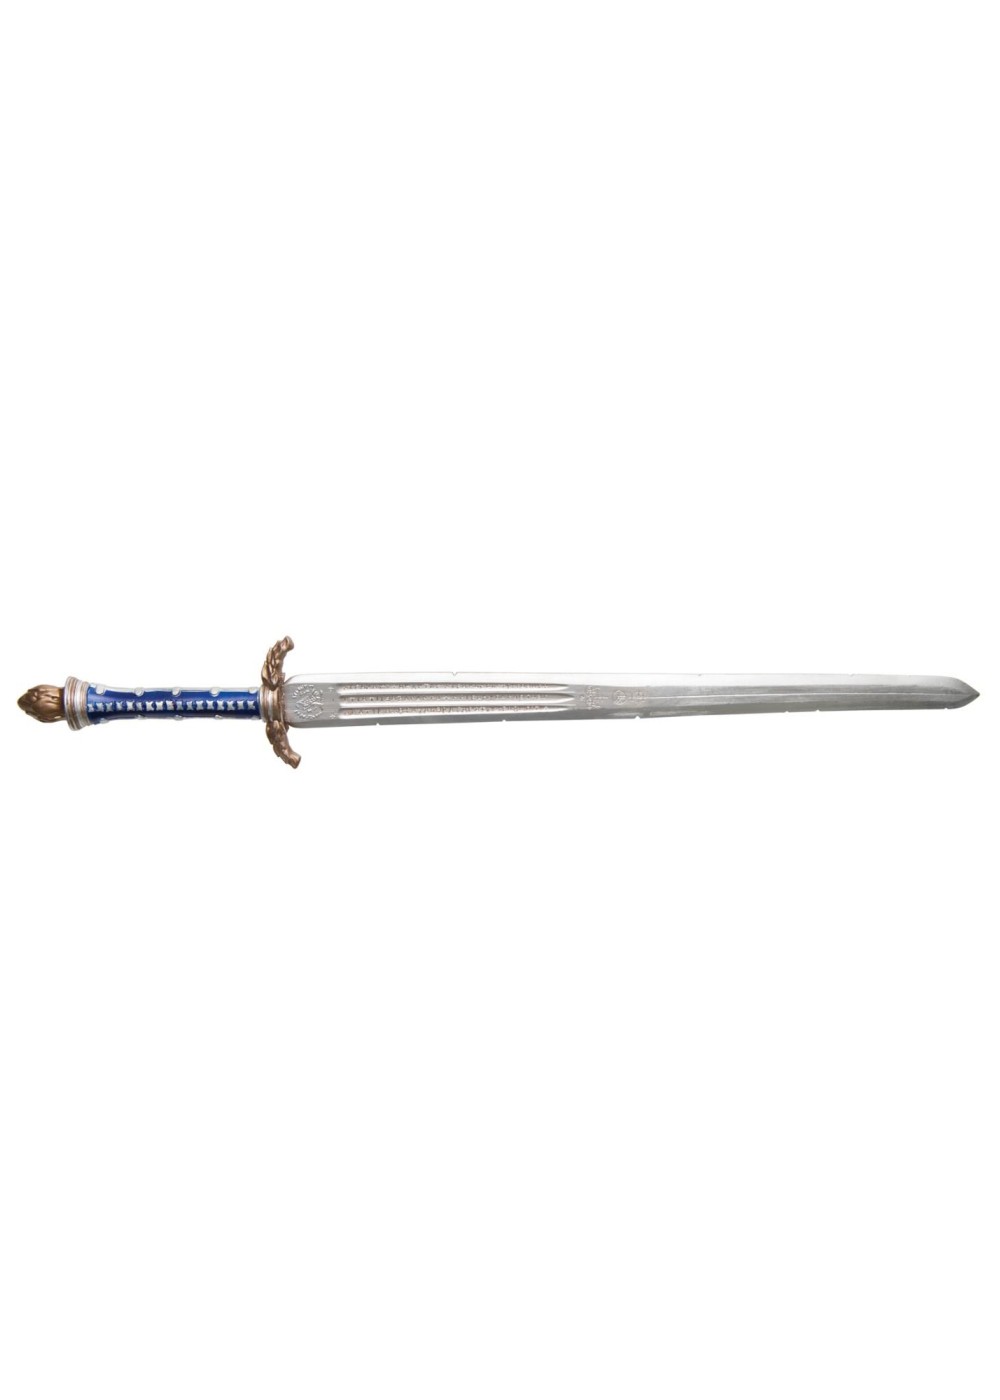 adult game sword of wonder v.26 apkgamers download